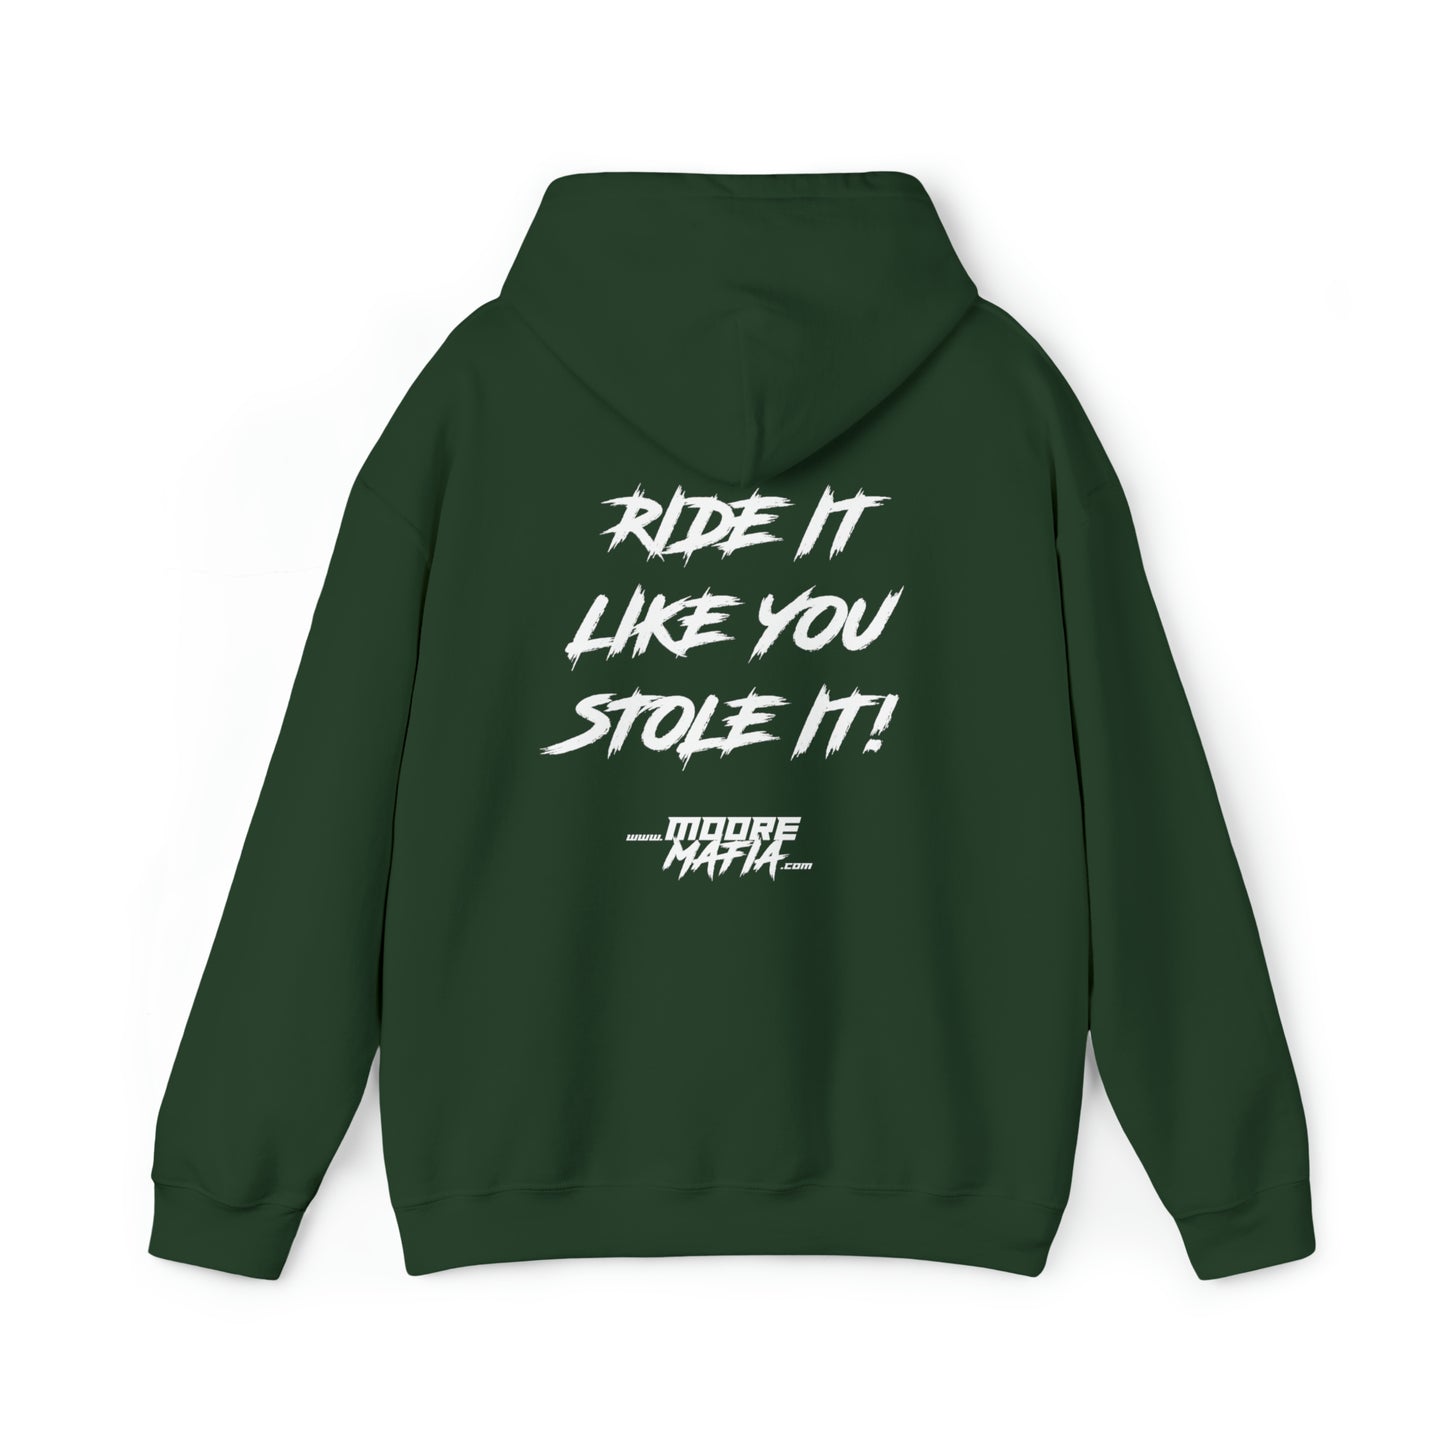 Ride It Like You Stole It Hooded Sweatshirt